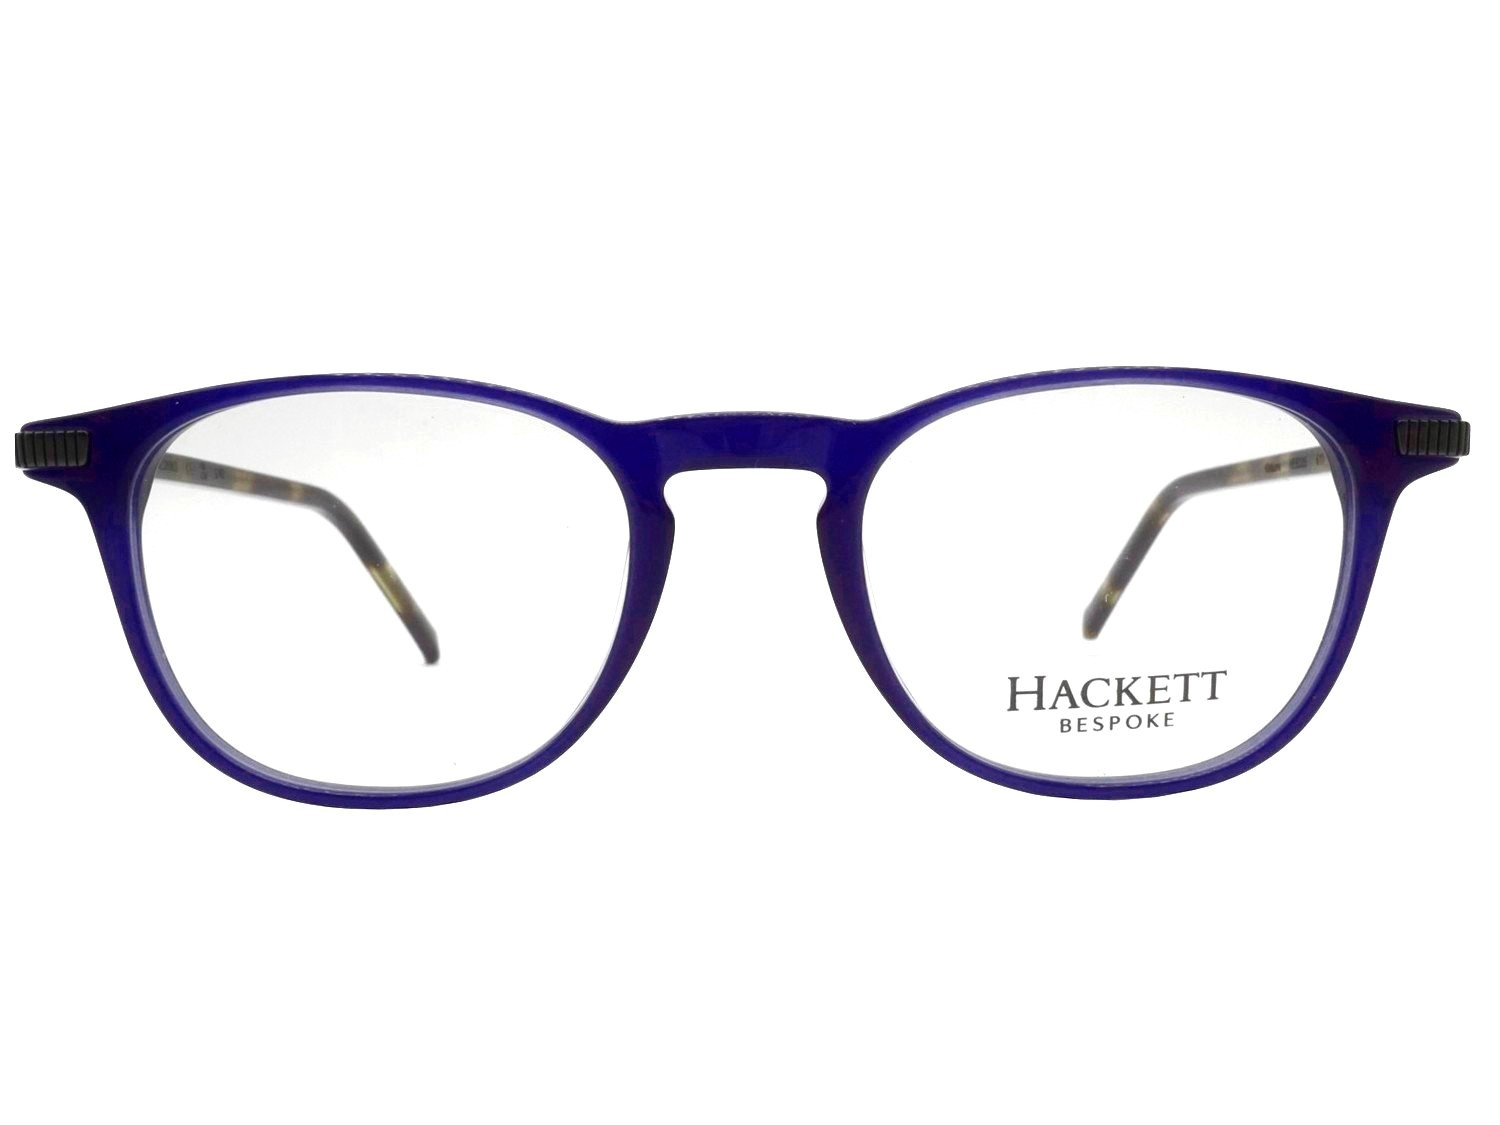 Hackett 335 611 bespoke